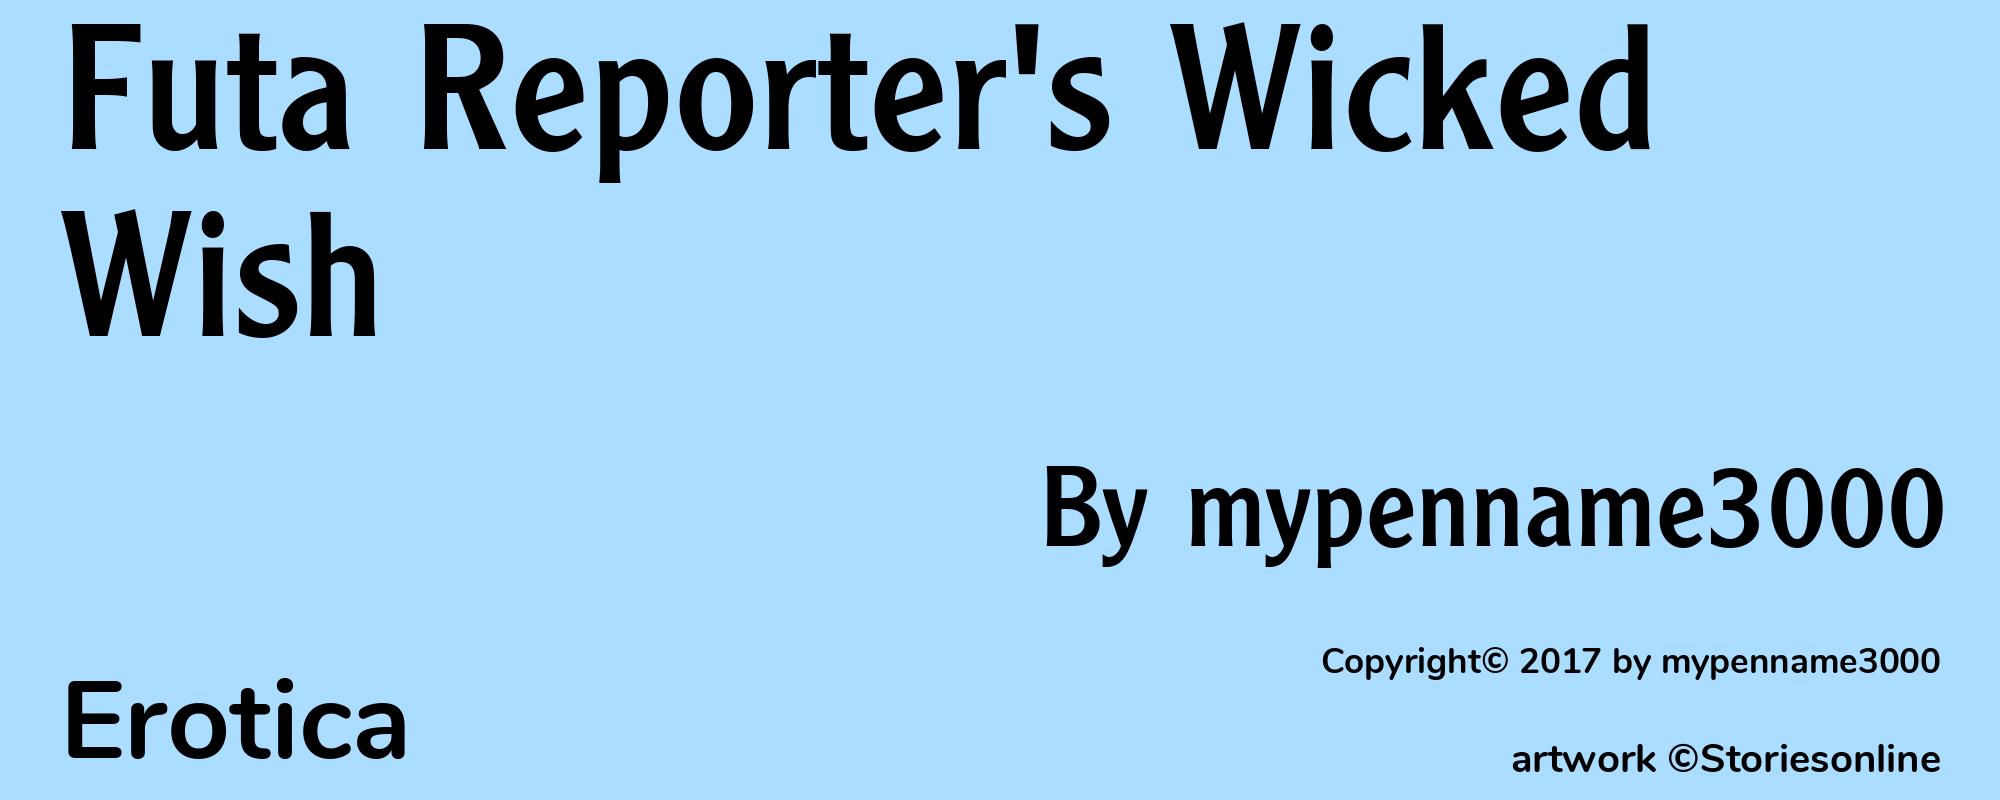 Futa Reporter's Wicked Wish - Cover